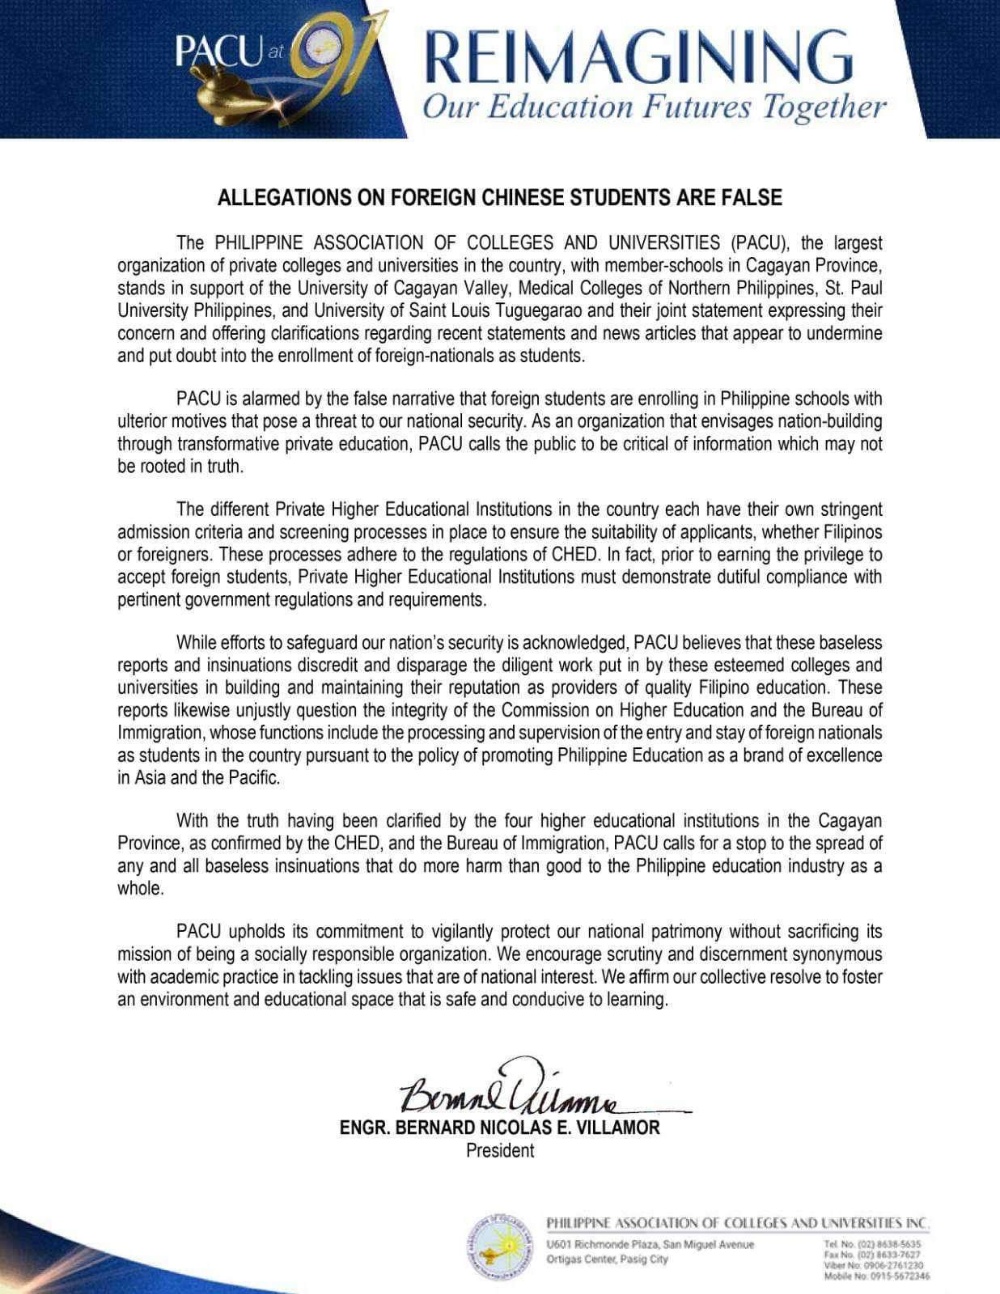 中国学生被"诬蔑间谍" 菲律宾大学联合会深感震惊及担忧